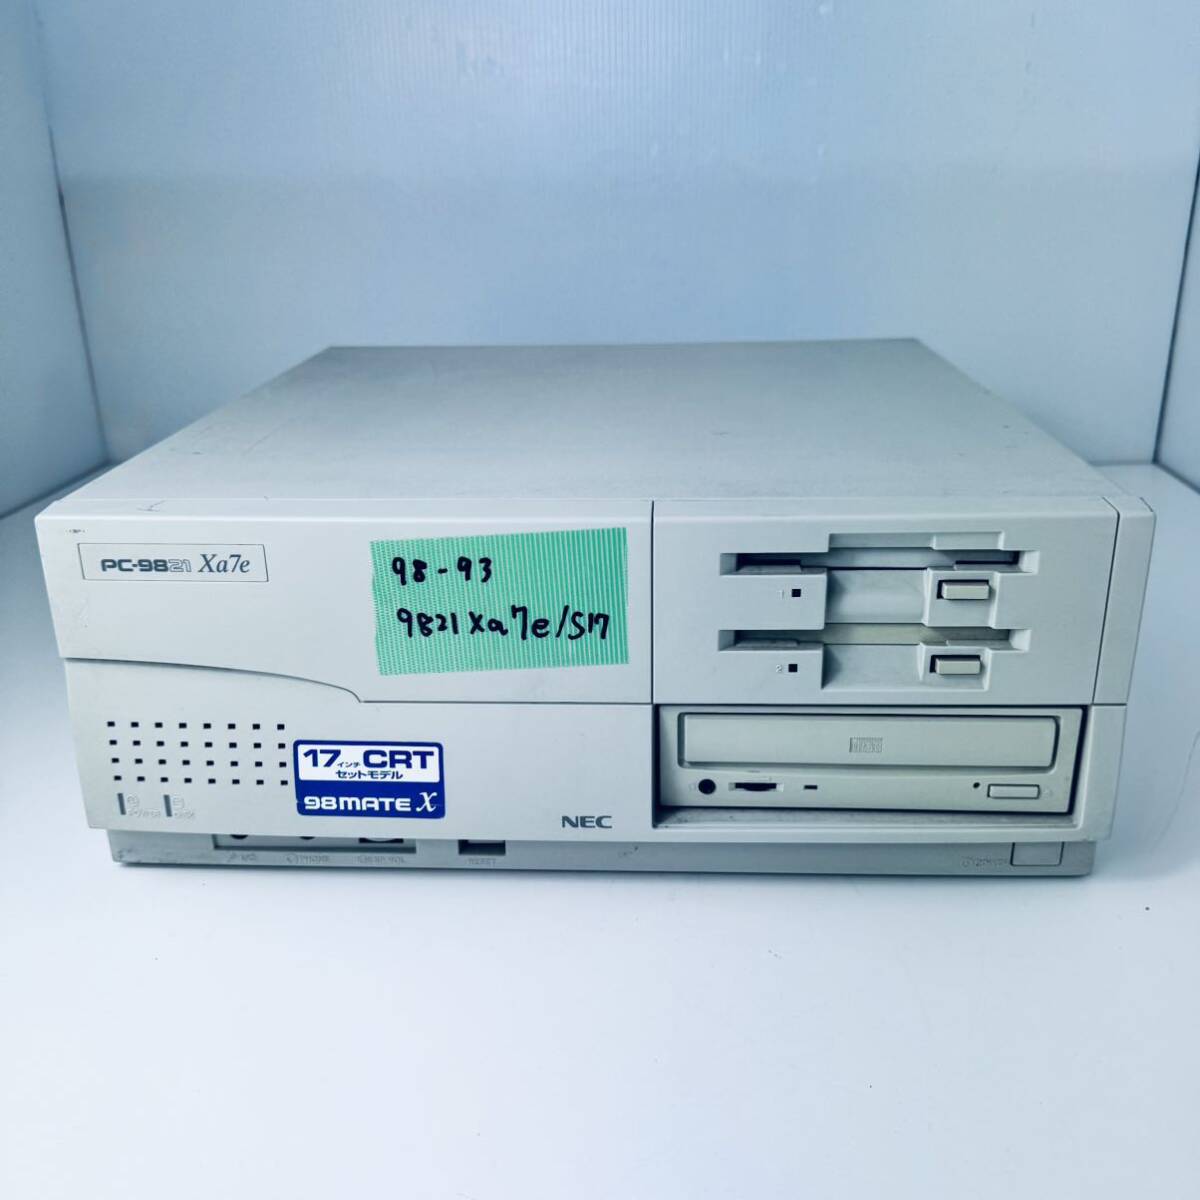 98-93 NEC PC-9821Xa7e/S17 HDD欠 Pentium pk-mxp233/98 CPUアクセラレーター ピポ音OK 電源入りますが画面出力されません_画像1